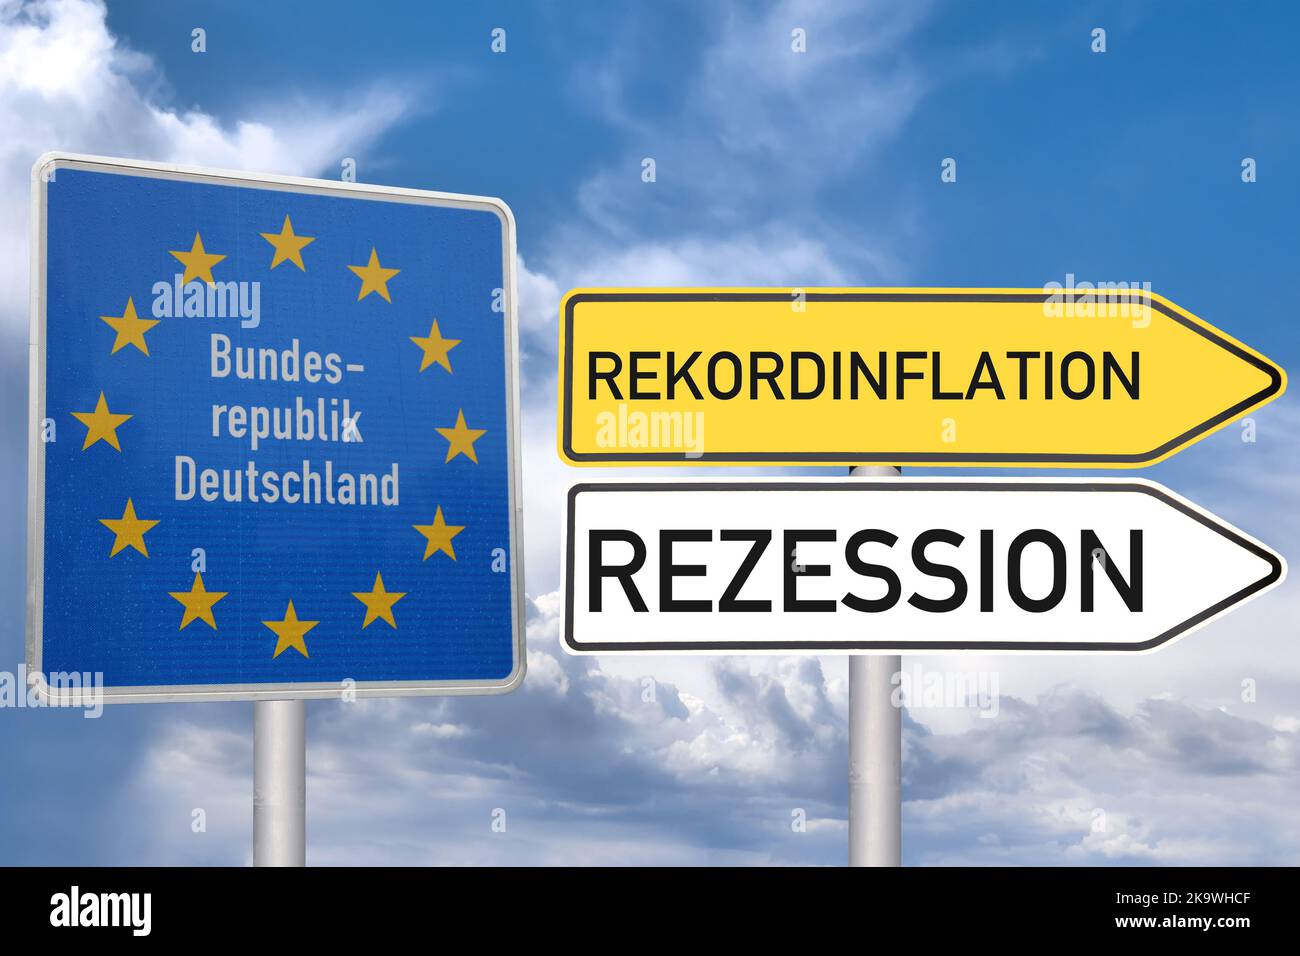 Symbolbild Rezession: Grenzschild der Bundesrepublik Deutschland, daneben zeigen Schilder in Richtung Rekordinflation und Rezession (Composing) Stock Photo